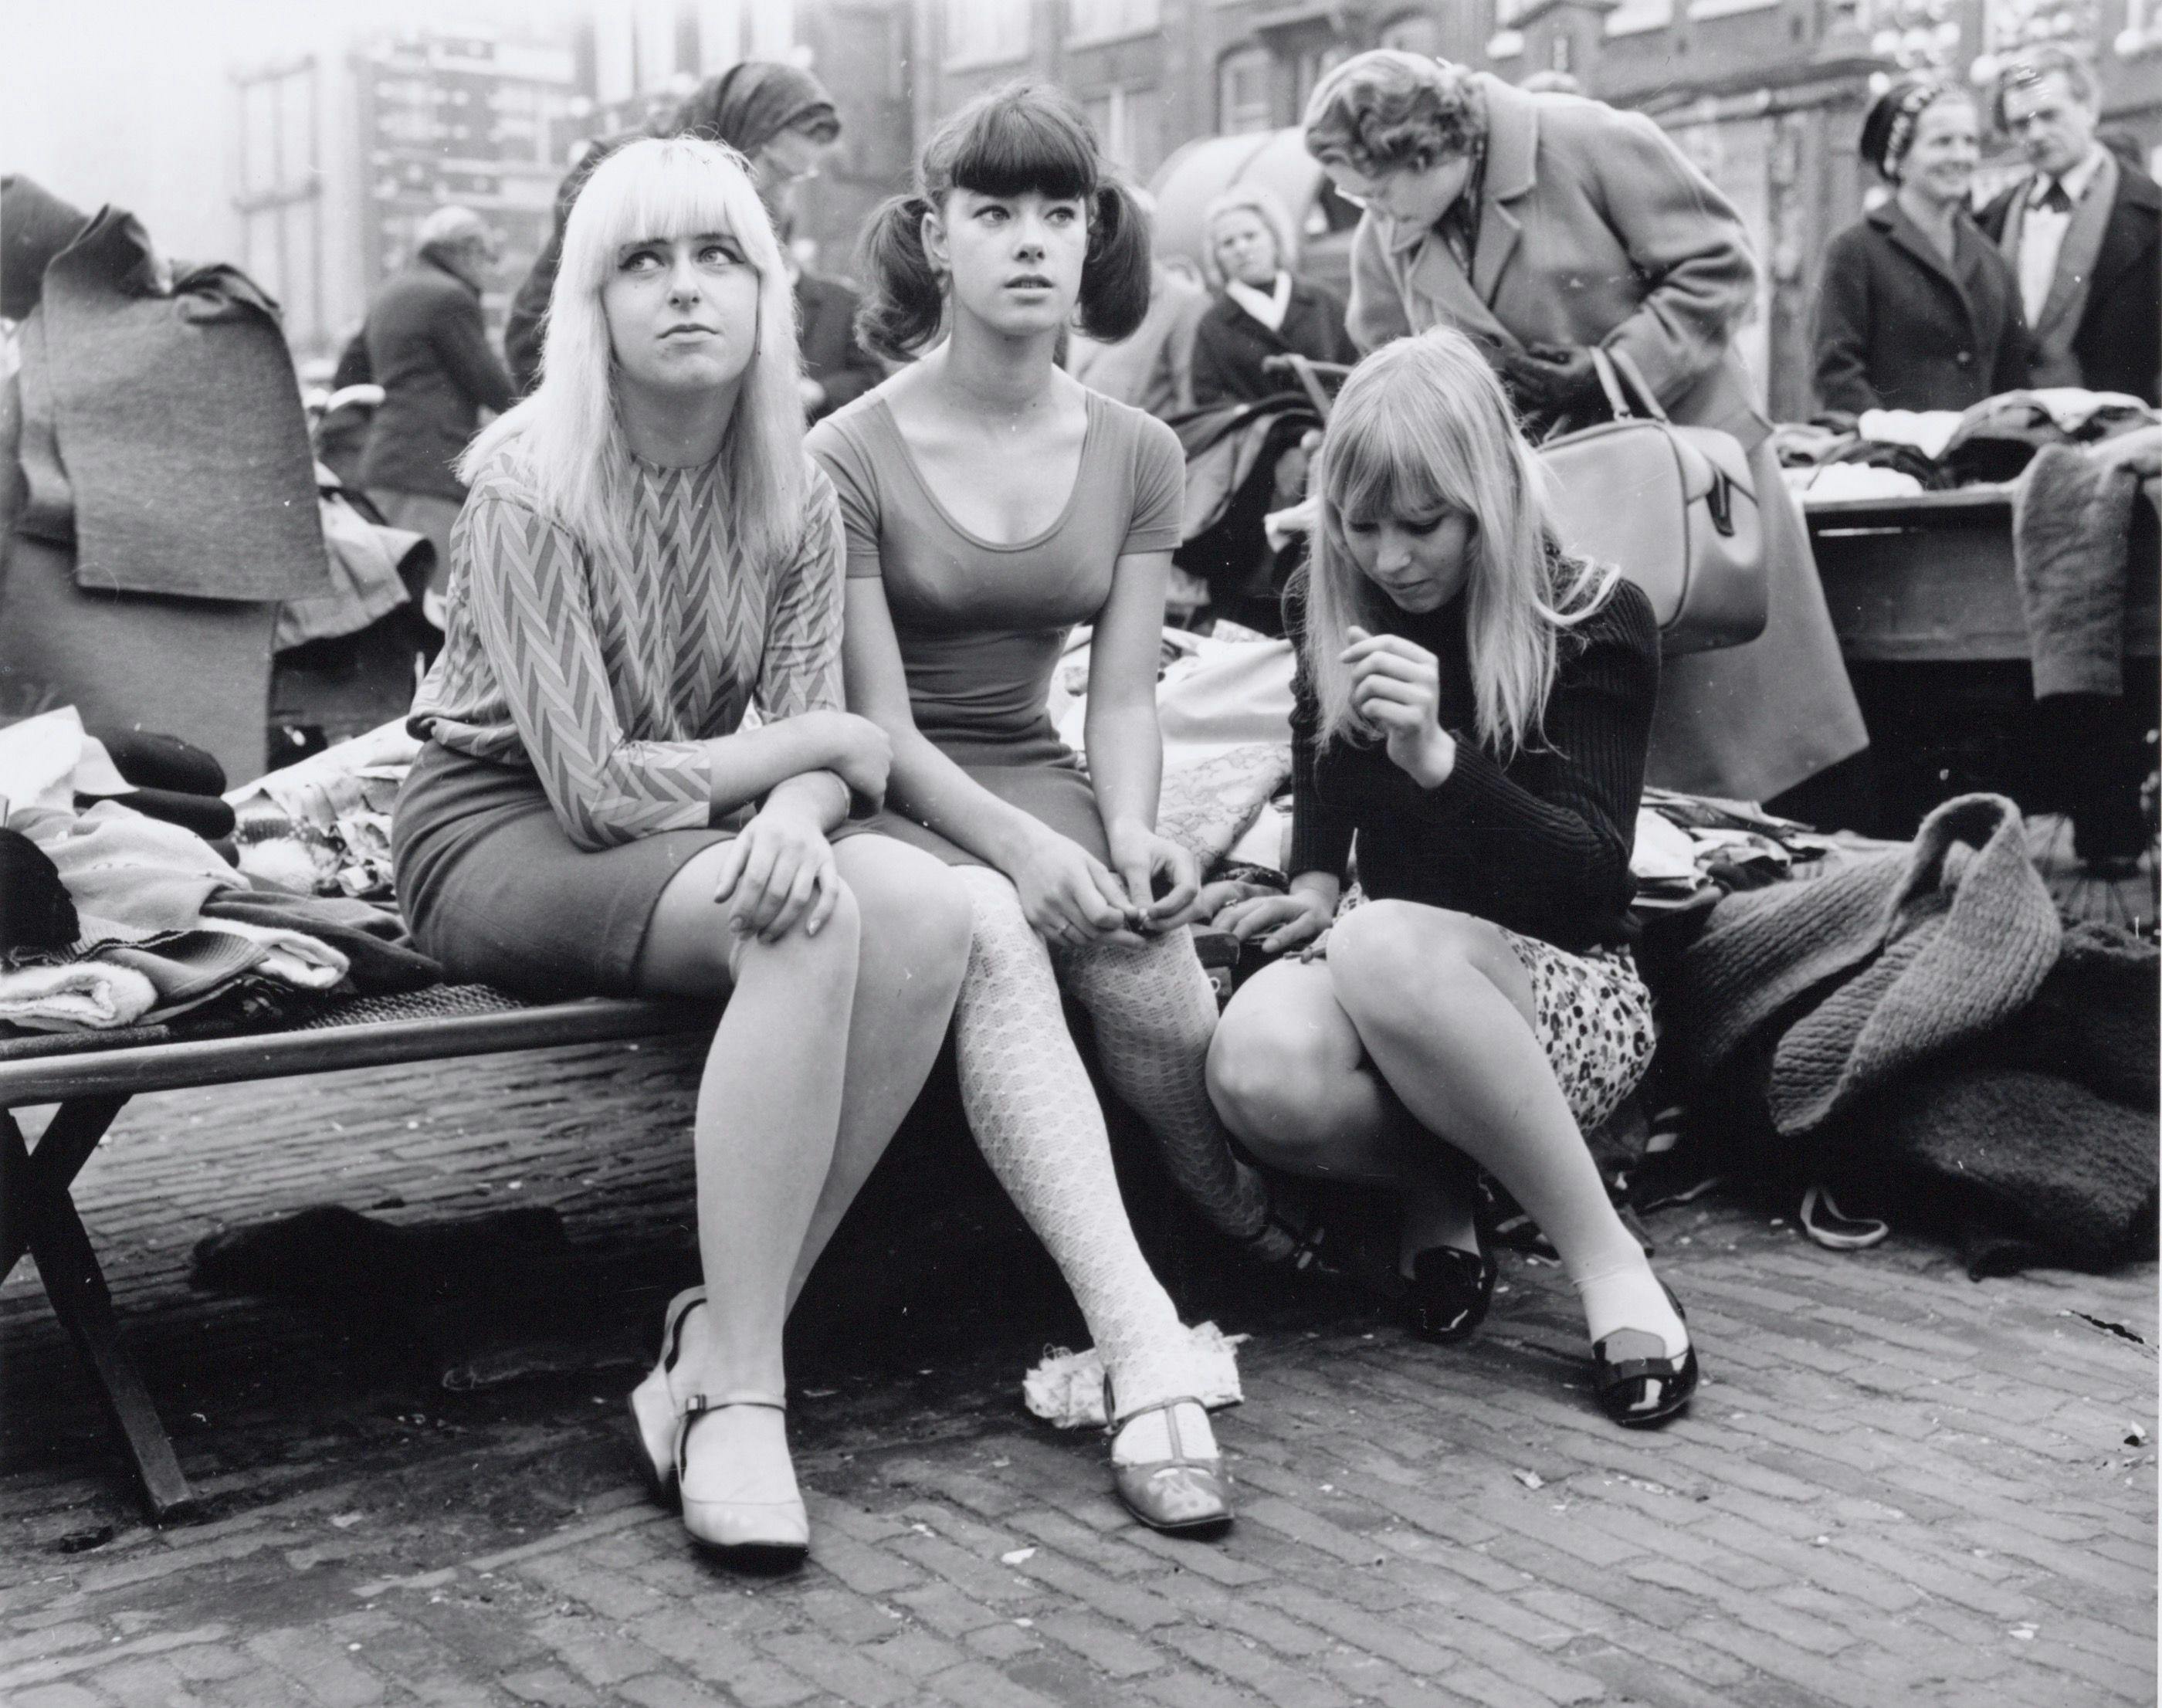 Waterlooplein square, 1966. Photo Ben van Meerendonk. Collection Internationaal Instituut voor Sociale Geschiedenis 